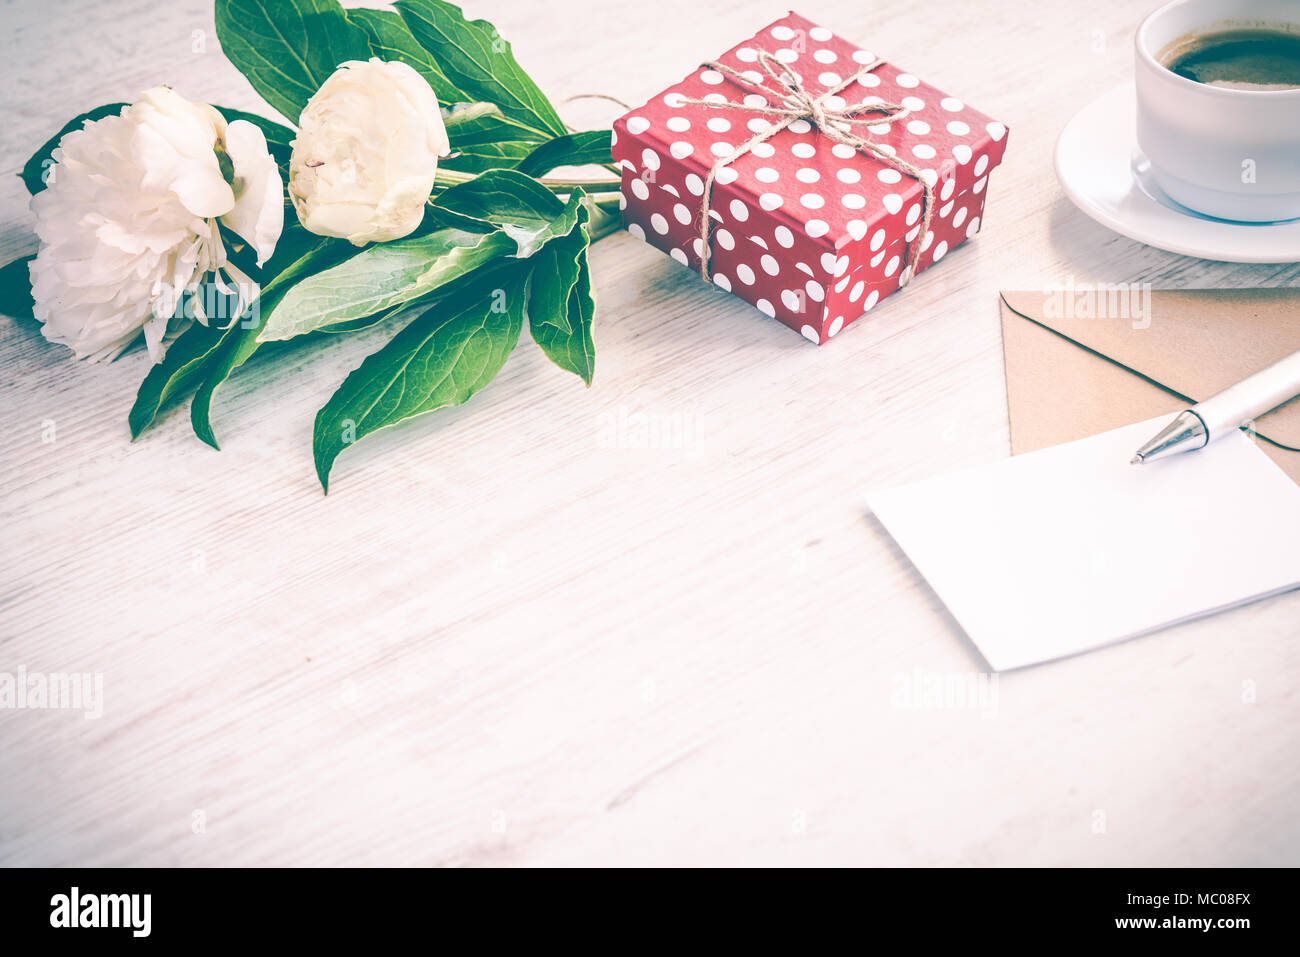 Gepunktete rote Geschenkbox, Kraftpapier Umschlag und leere Grußkarte, Kaffeetasse und Pfingstrose blumen blumenstrauss über weiß Holz Hintergrund. Kopieren Sie Platz. Vintage Effe Stockfoto